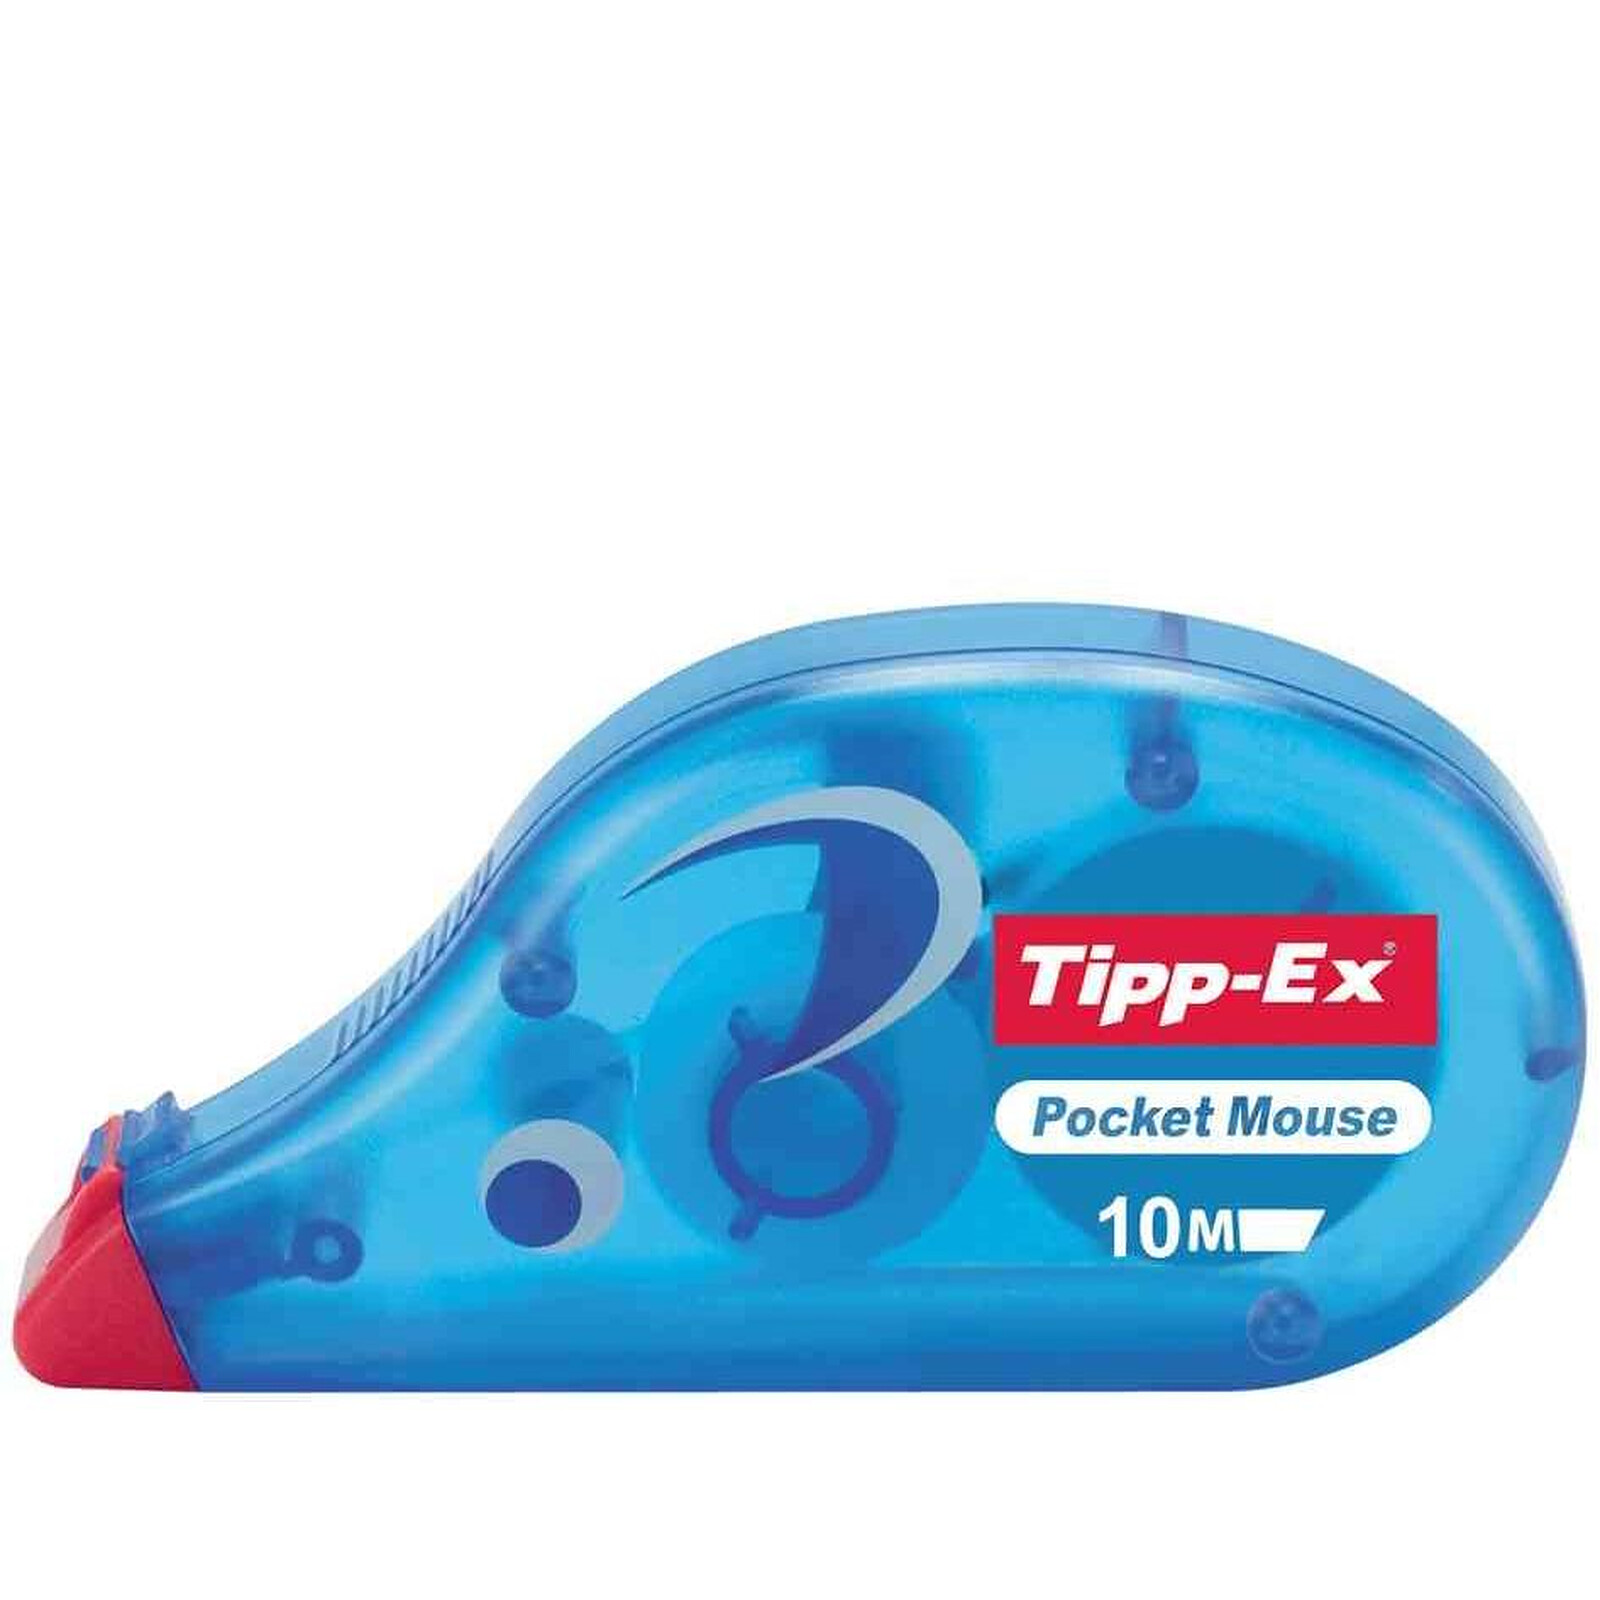 TIPP-EX Ruban correcteur 'Pocket Mouse', sous blister - Correcteur - LDLC